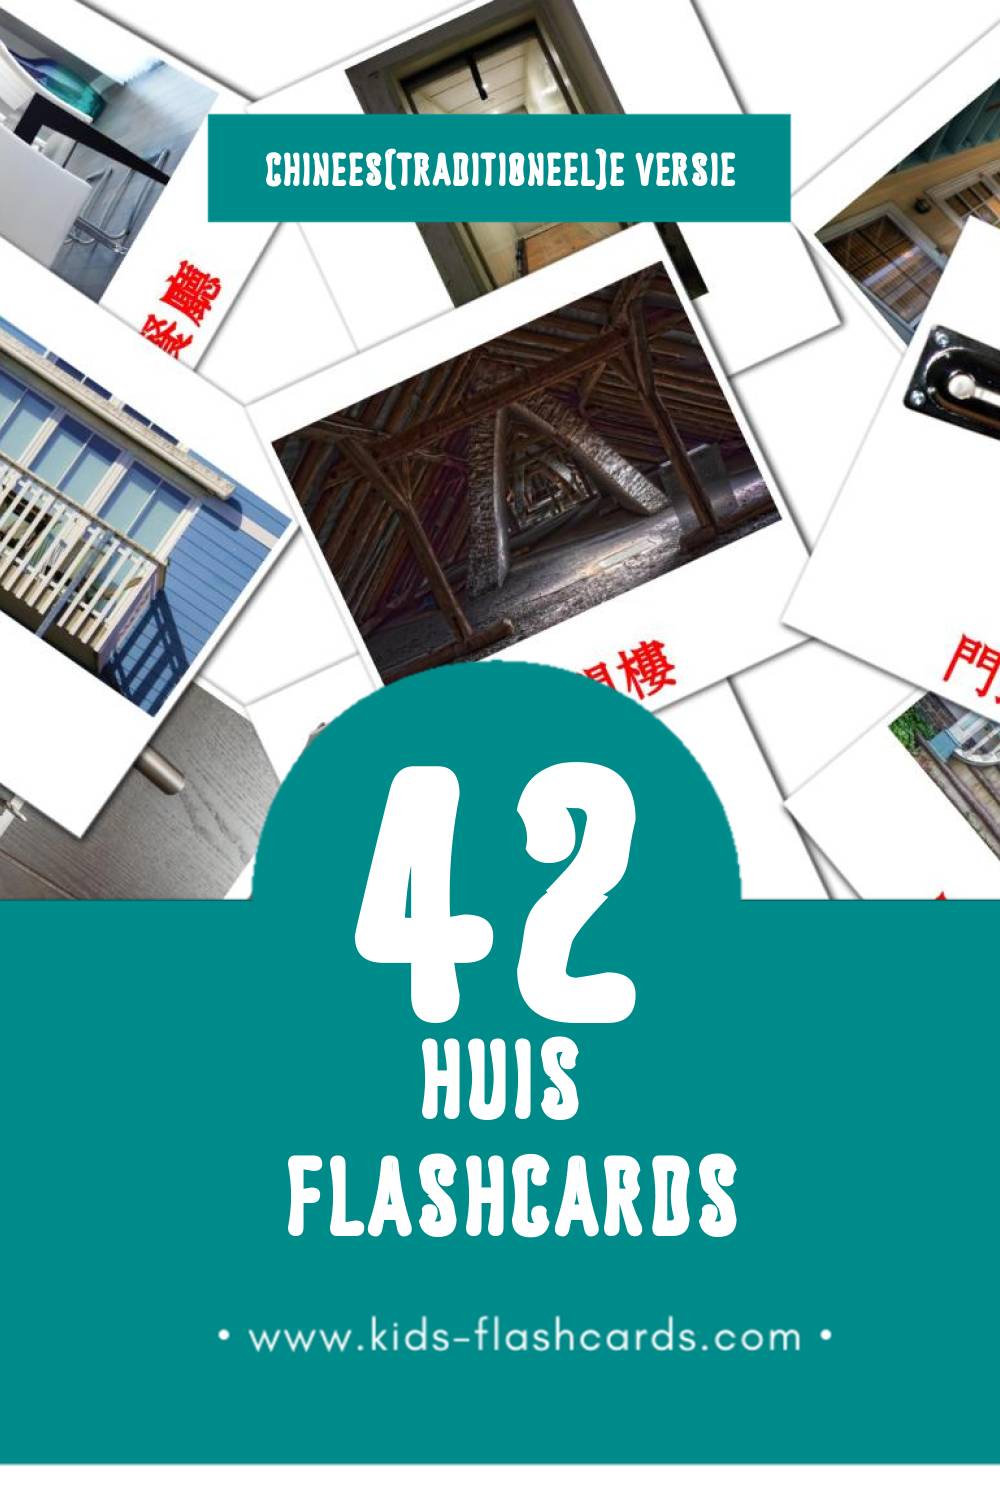 Visuele 房子 Flashcards voor Kleuters (42 kaarten in het Chinees(traditioneel))